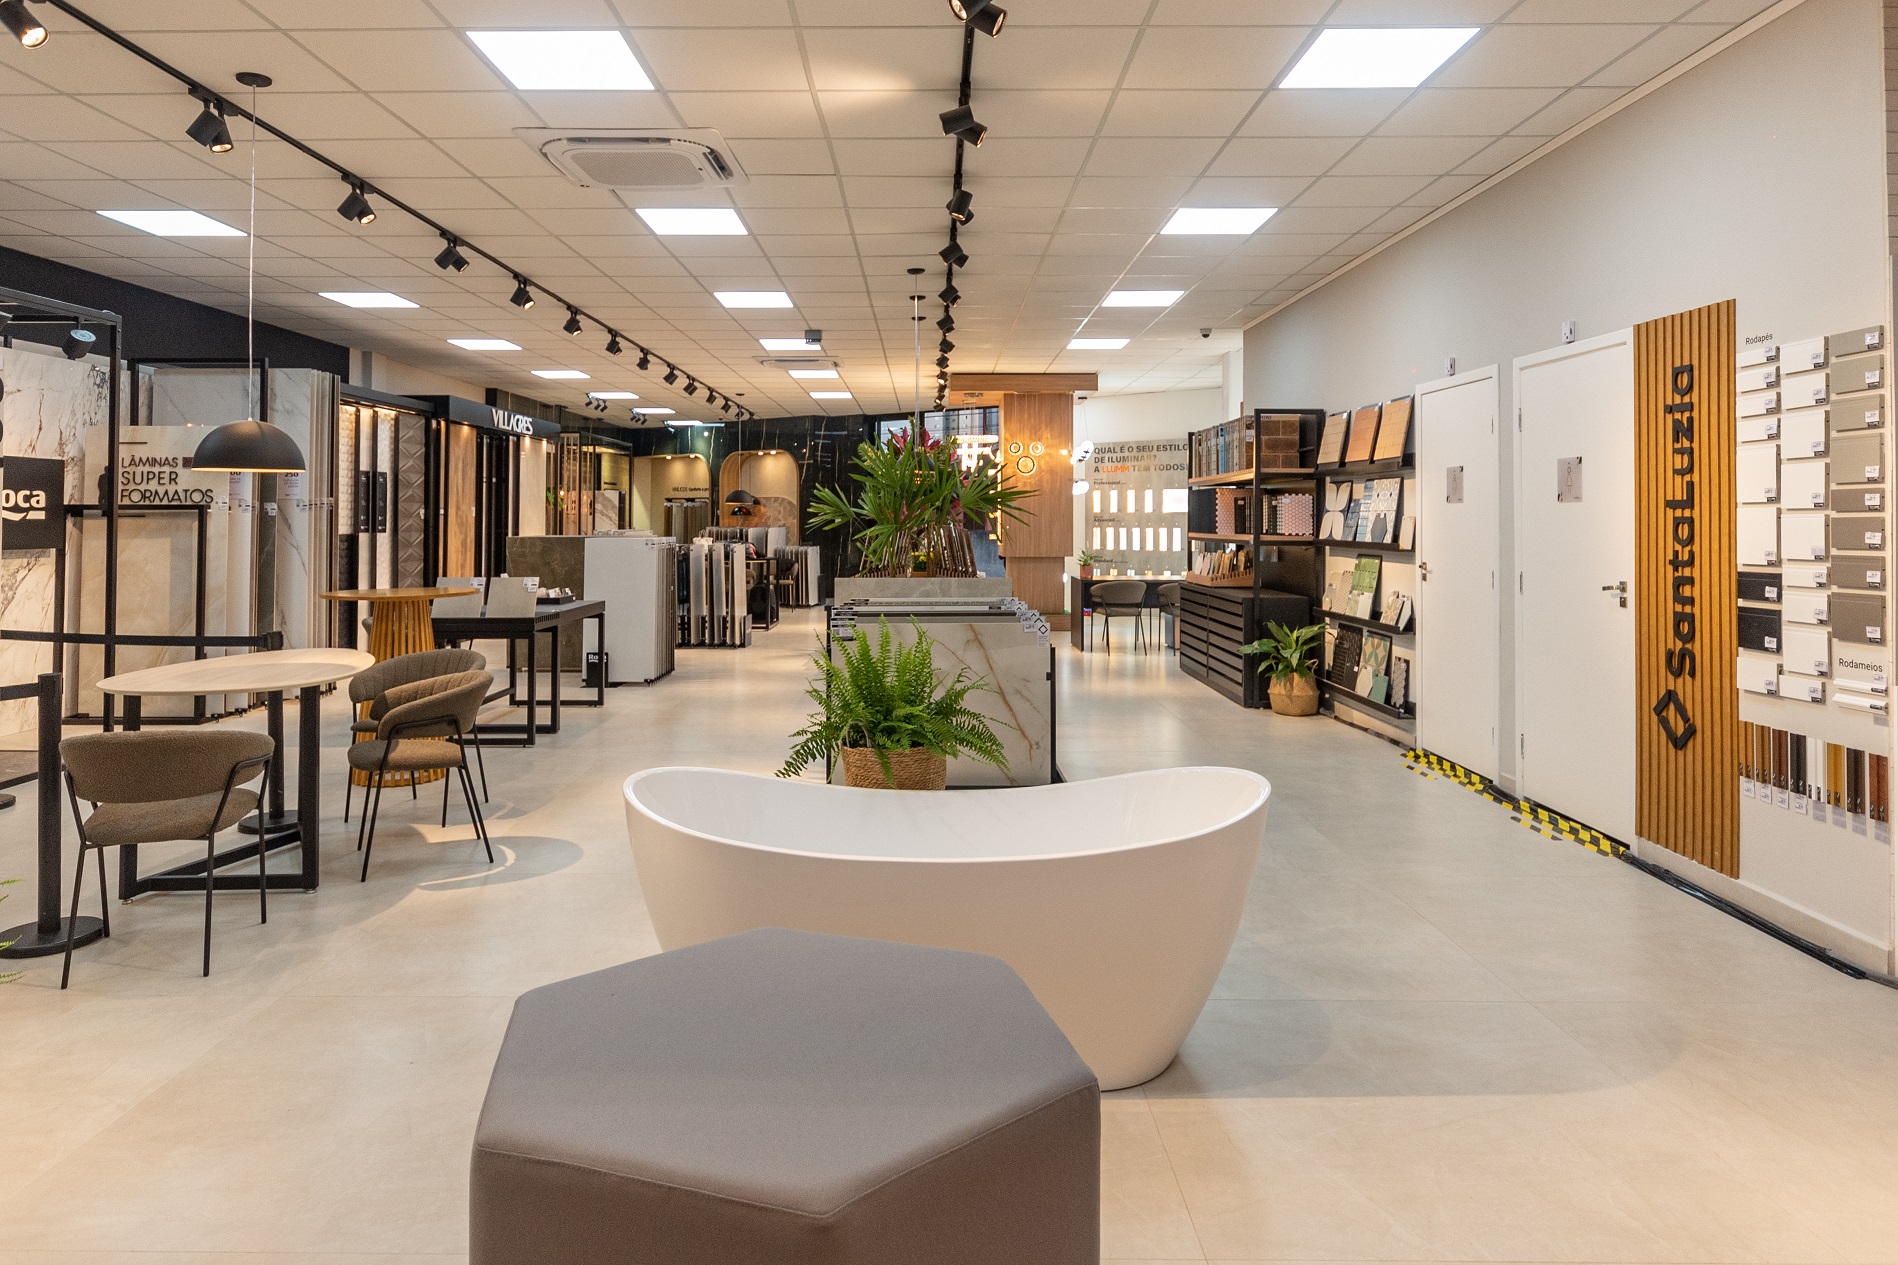 Telhanorte Tumelero inicia expansão de lojas nos modelos boutique e homecenter compacto